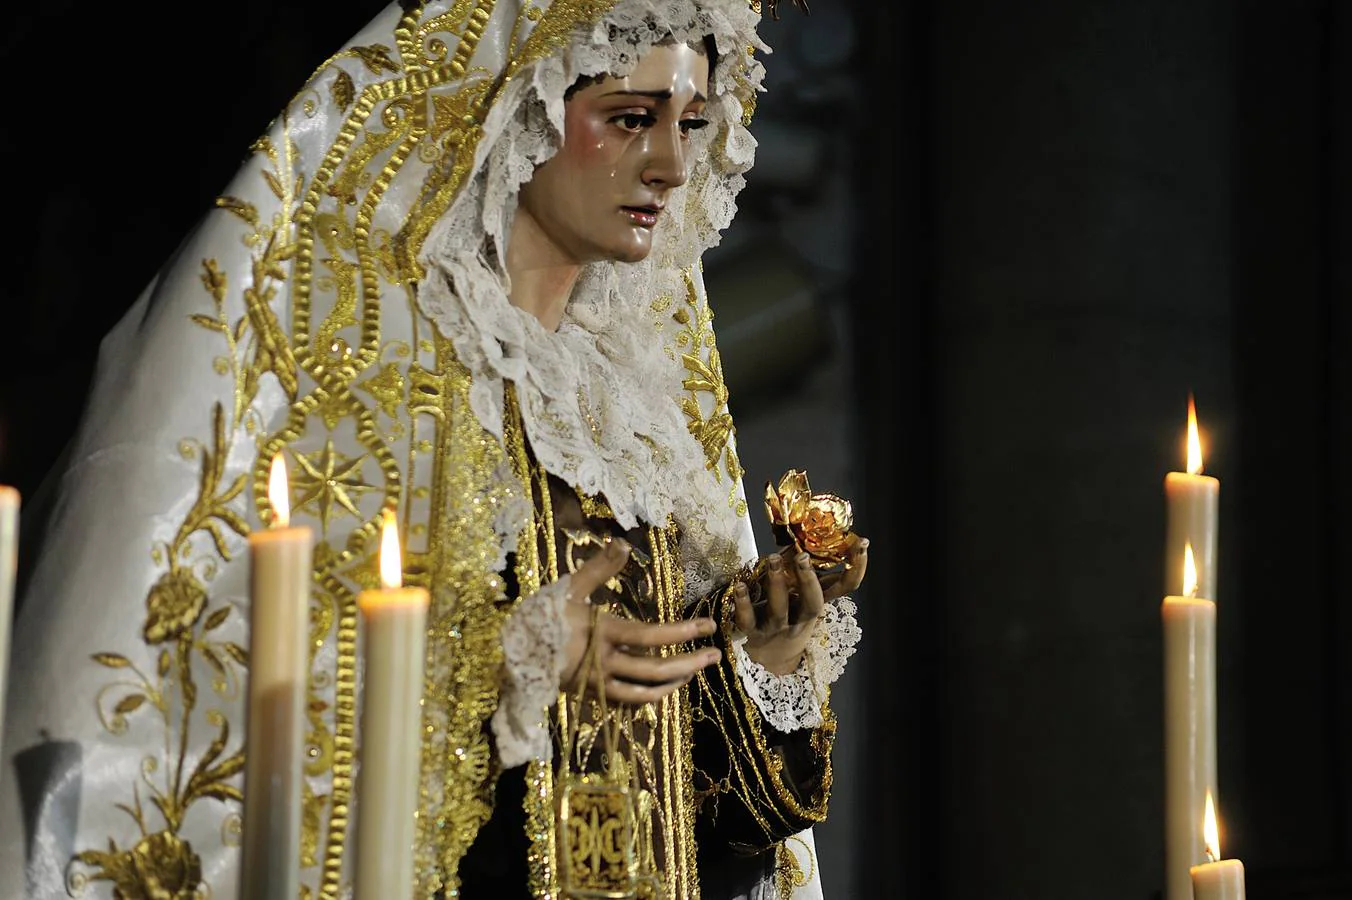 Galería de la función de la Virgen del Carmen